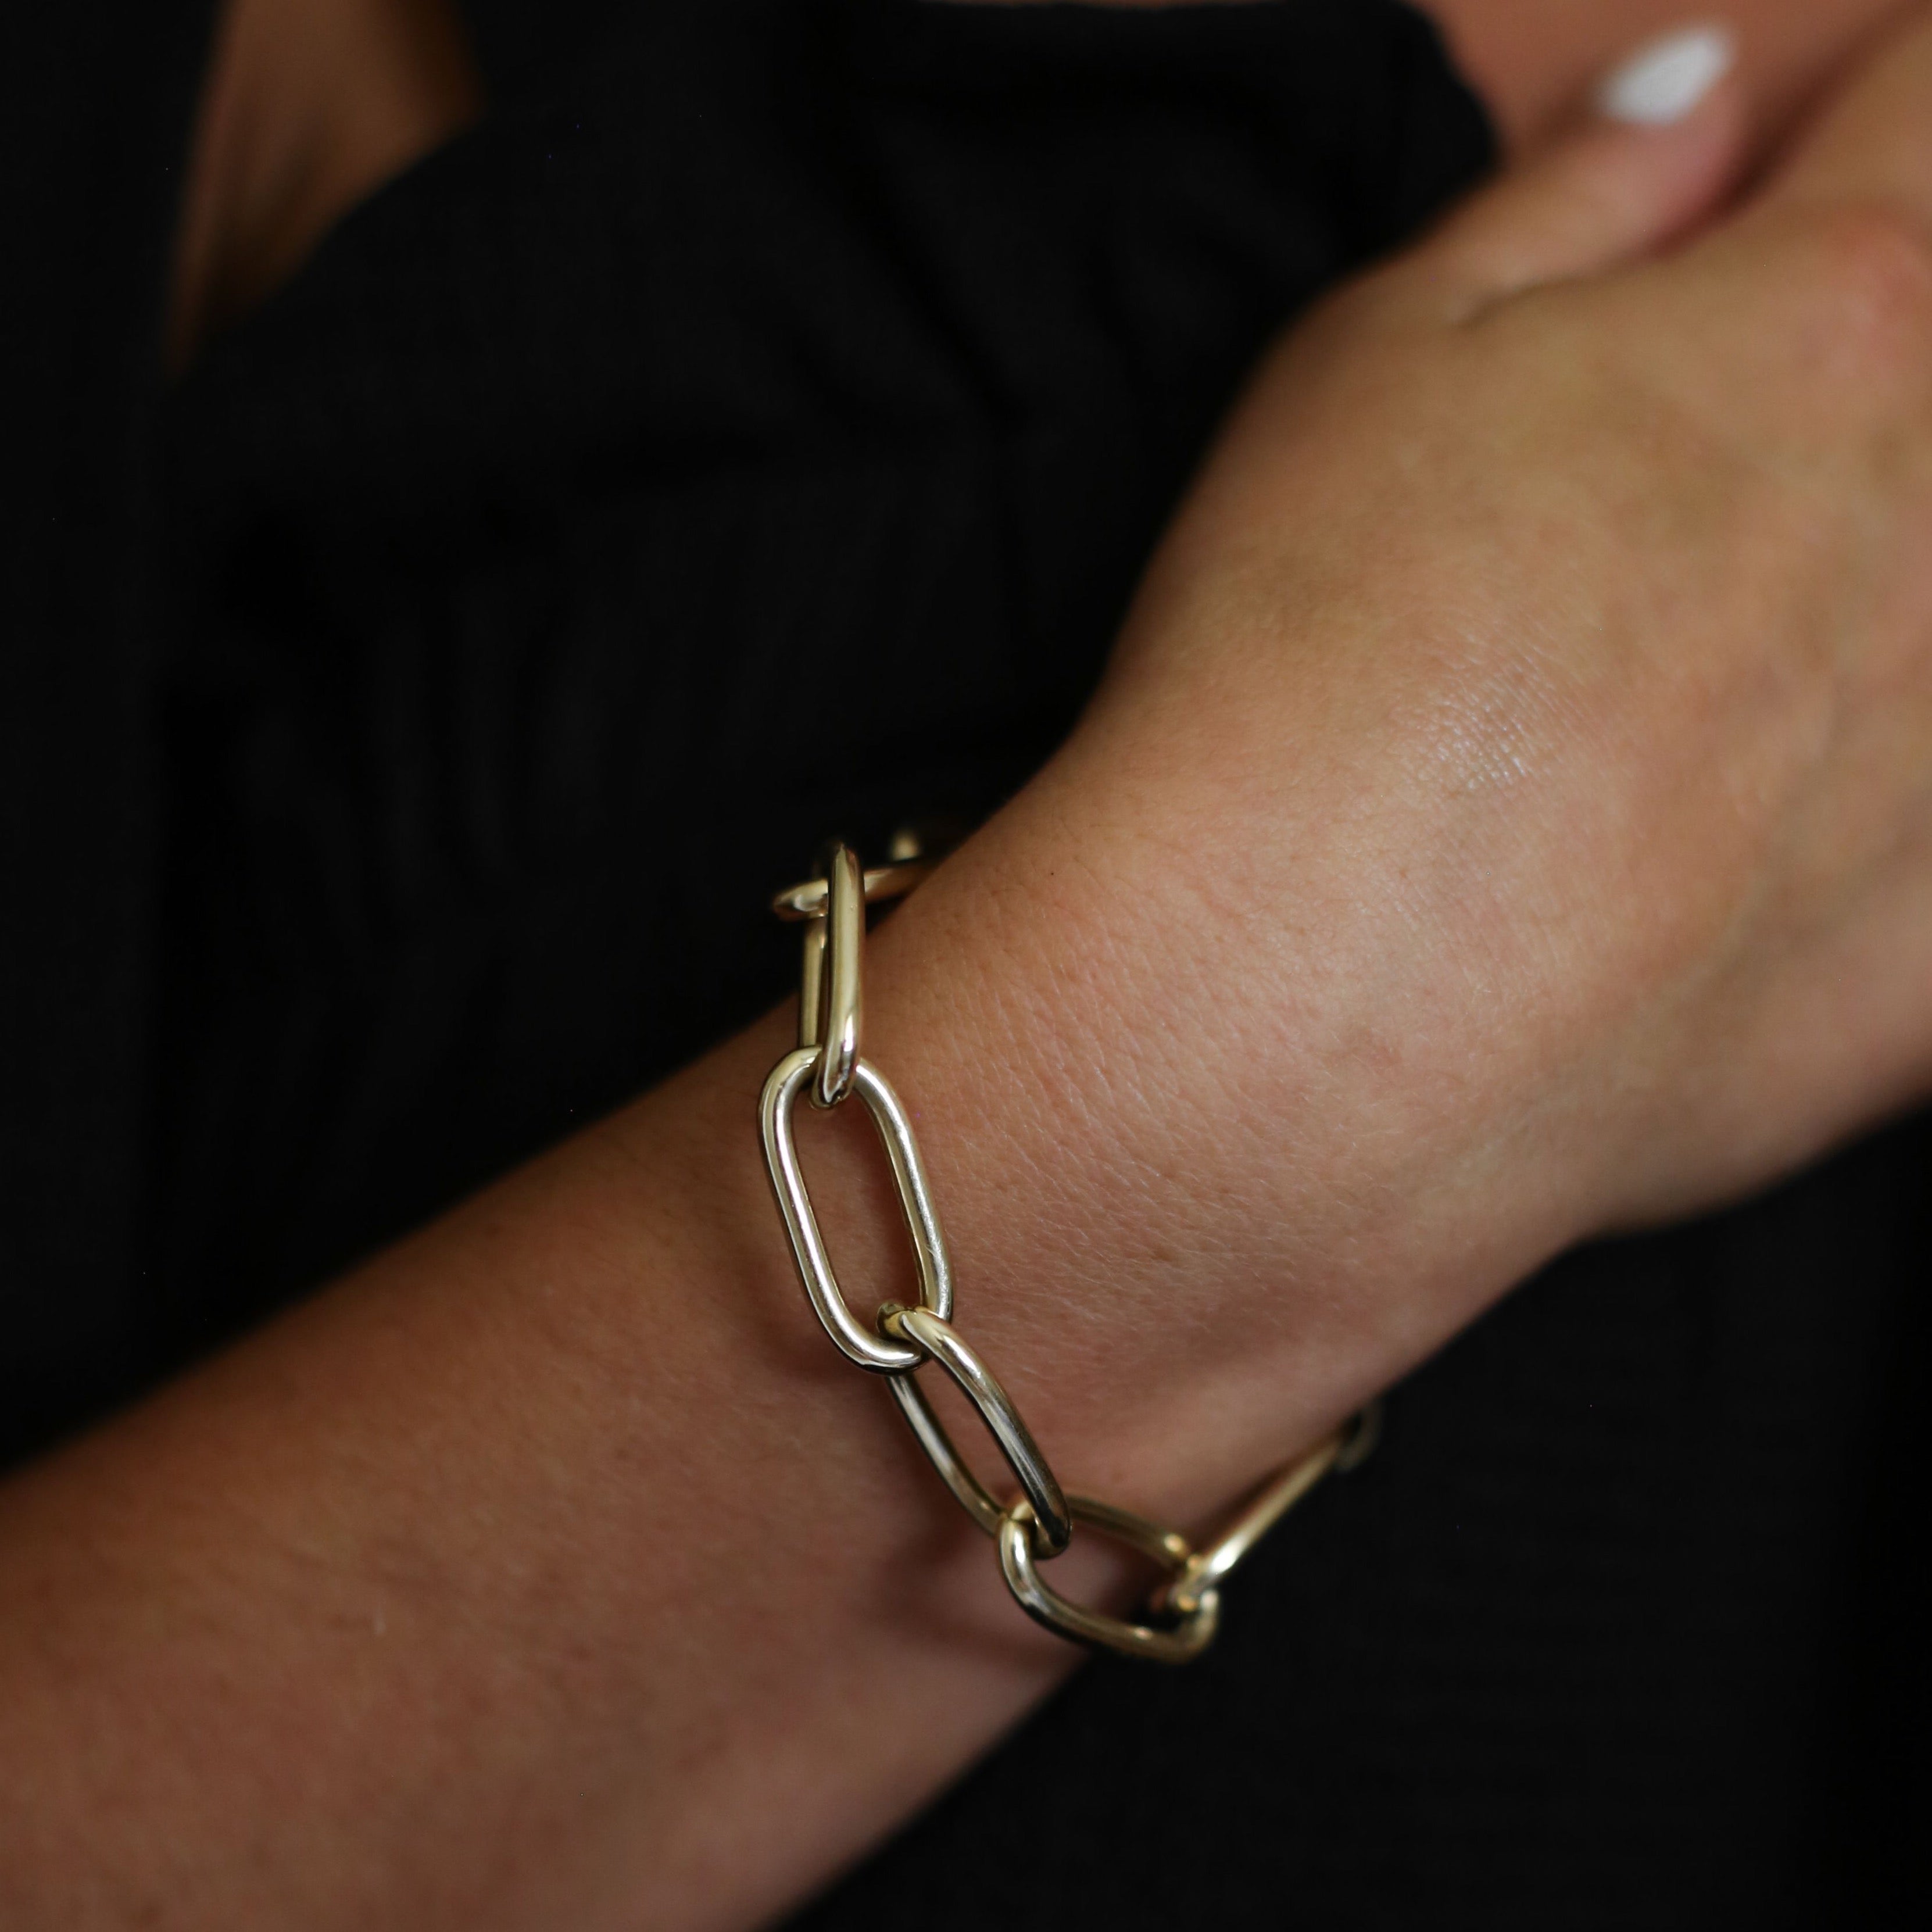 14k Jumbo Chain Bracelet by S. Carter Designs